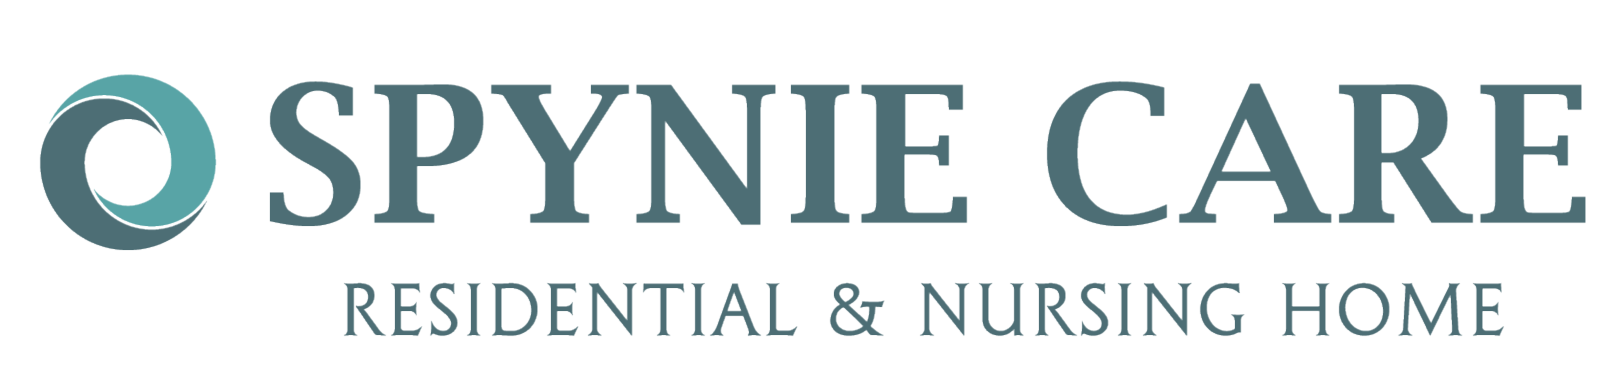 Spynie Care logo